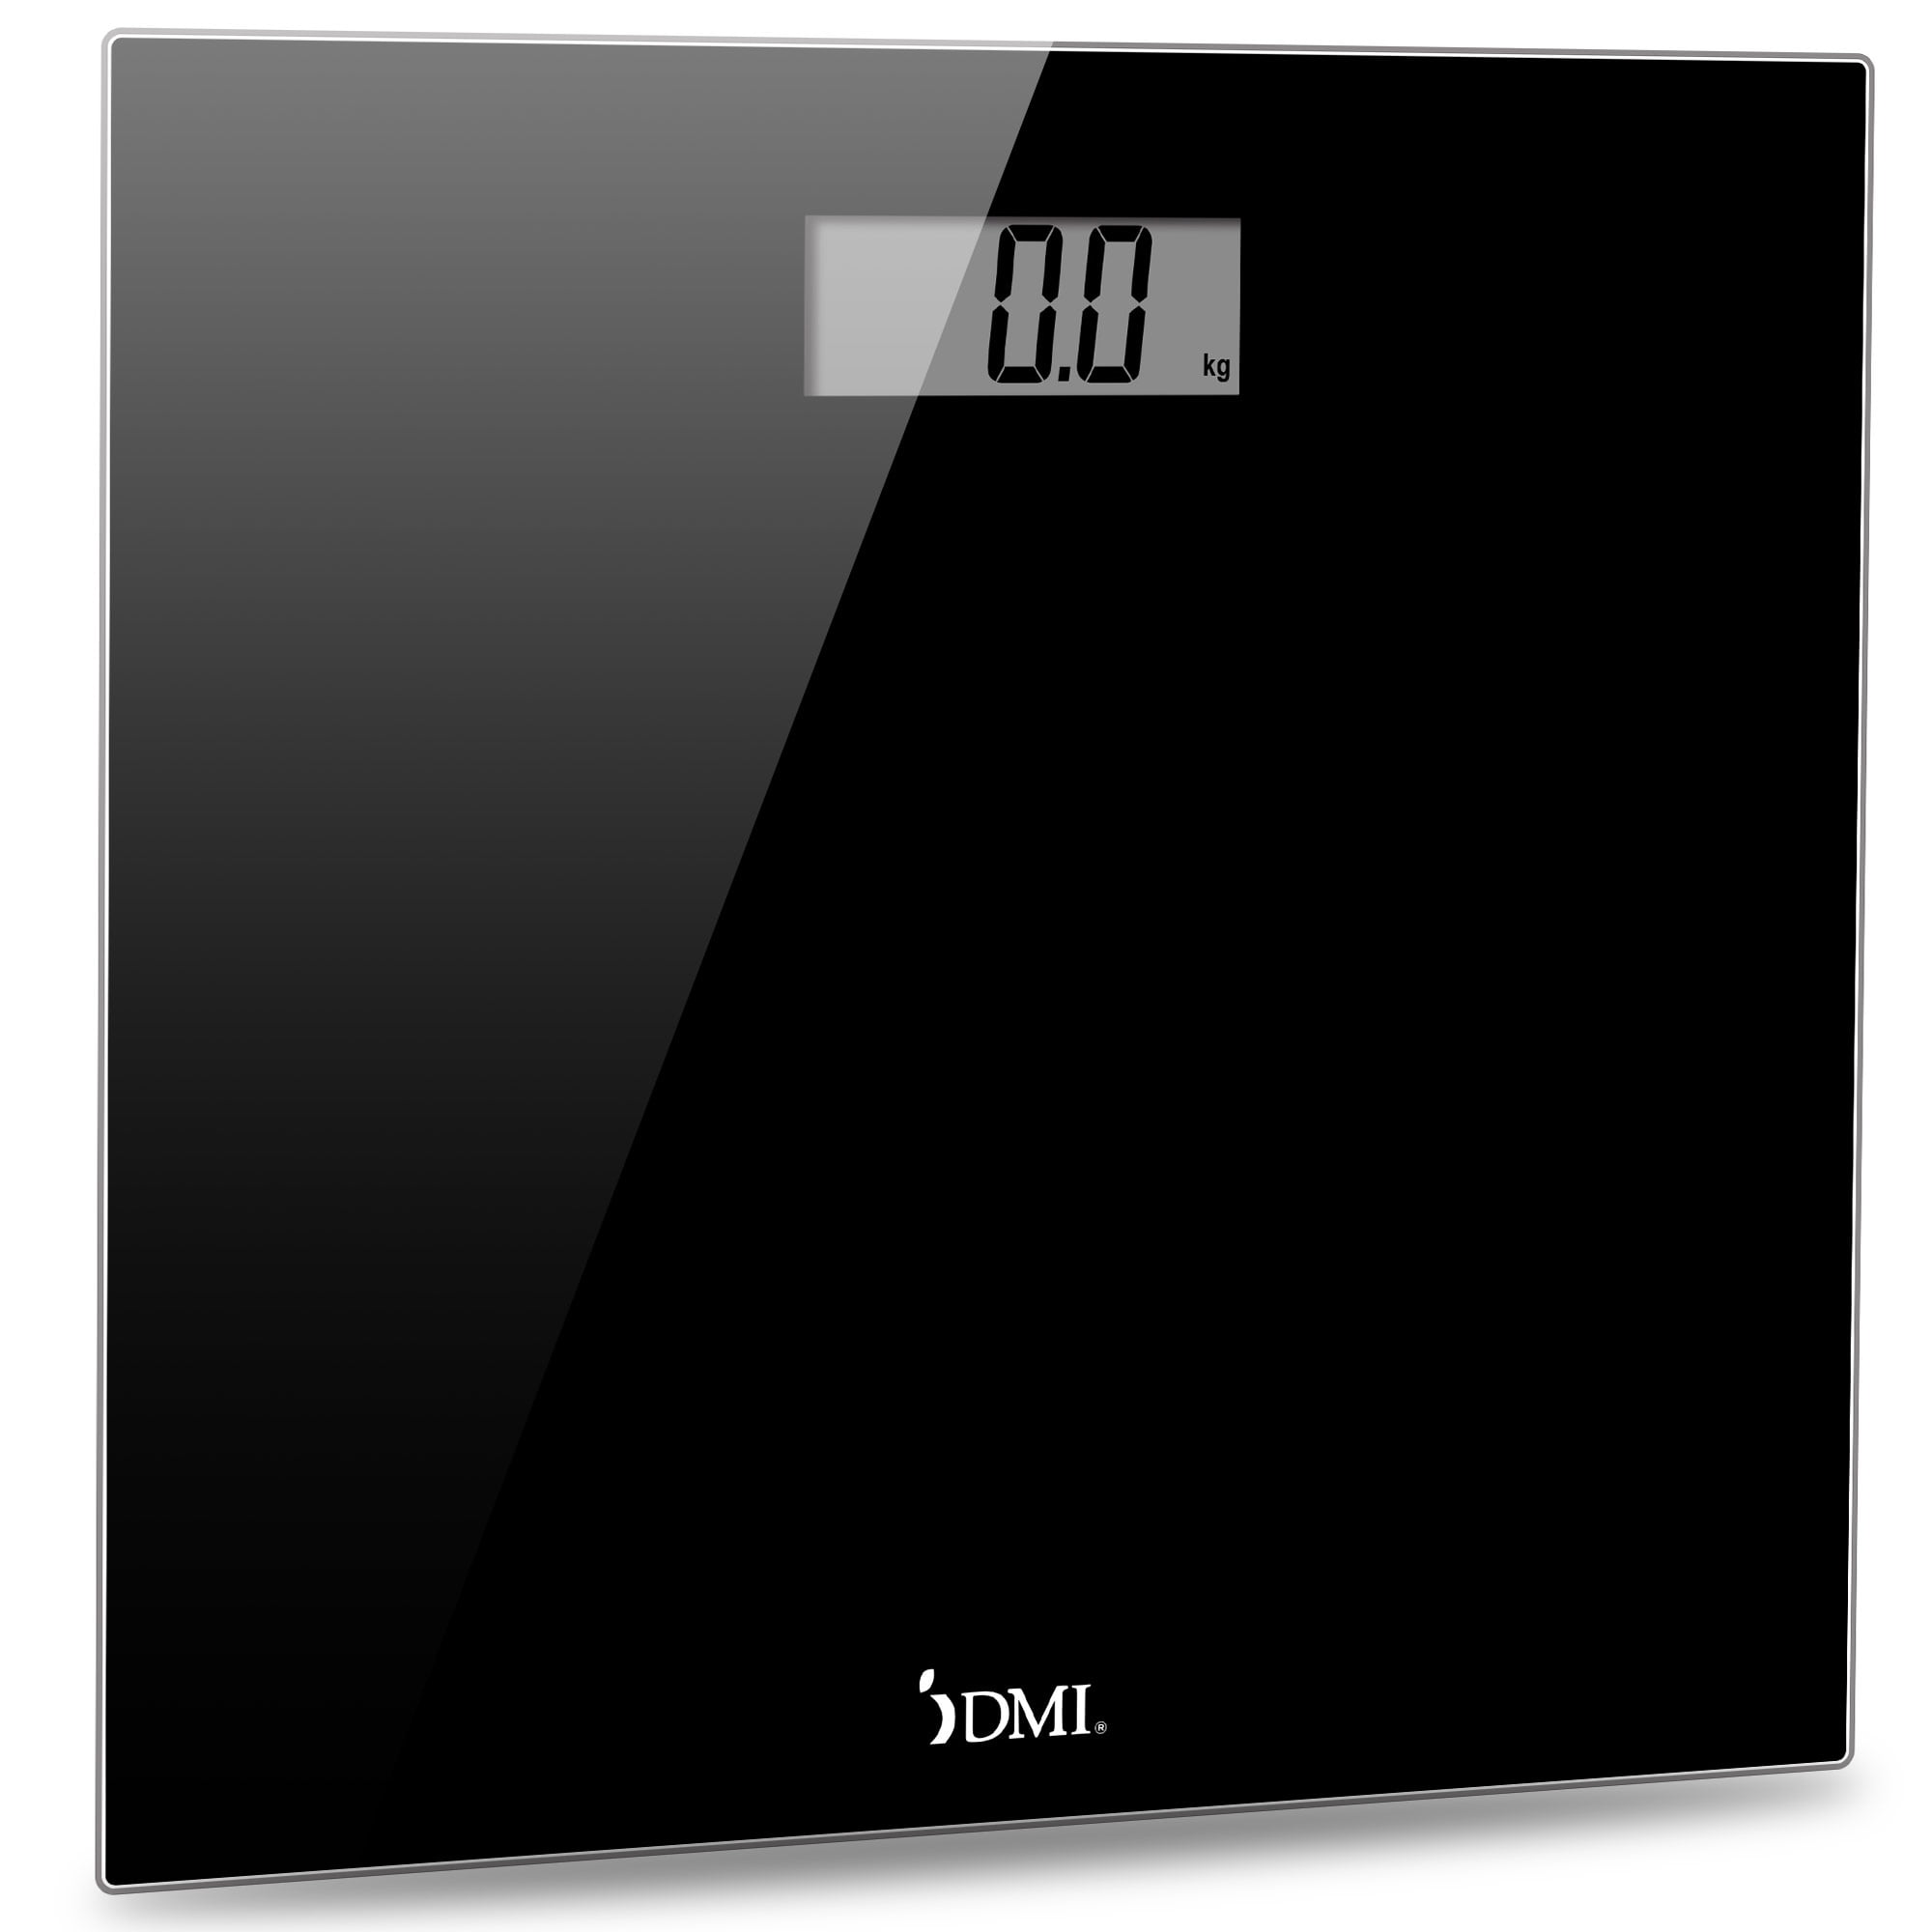 DMI Digital Bathroom Scale